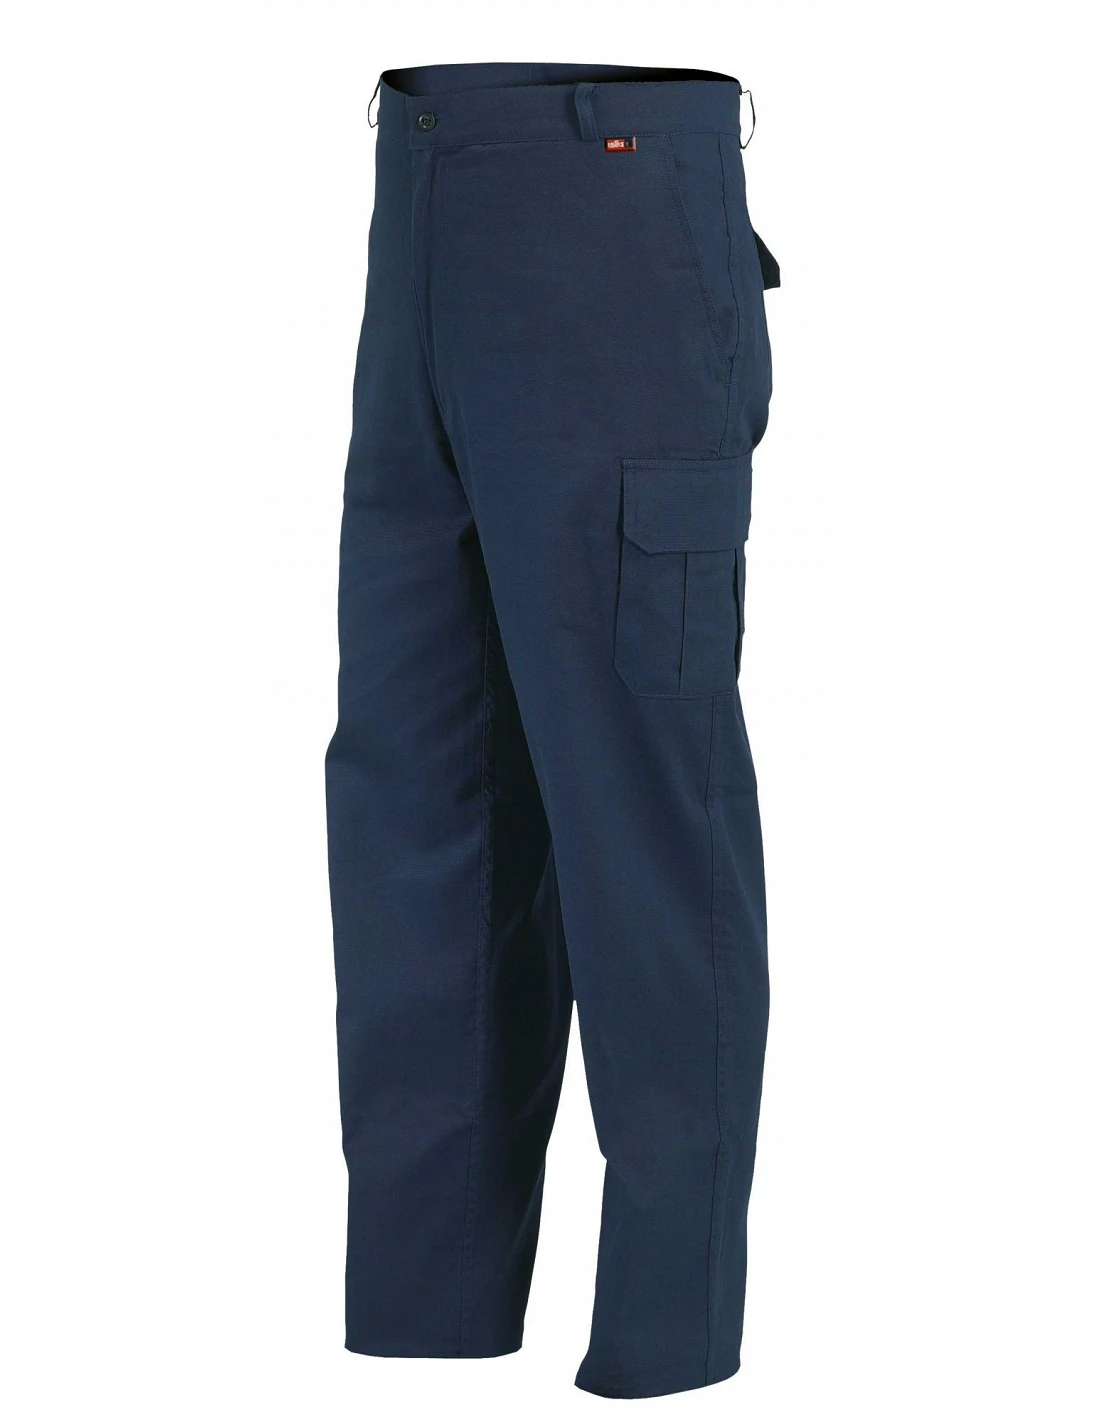 Pantalón de trabajo de mujer multibolsillos, 100% algodón talla XS/38